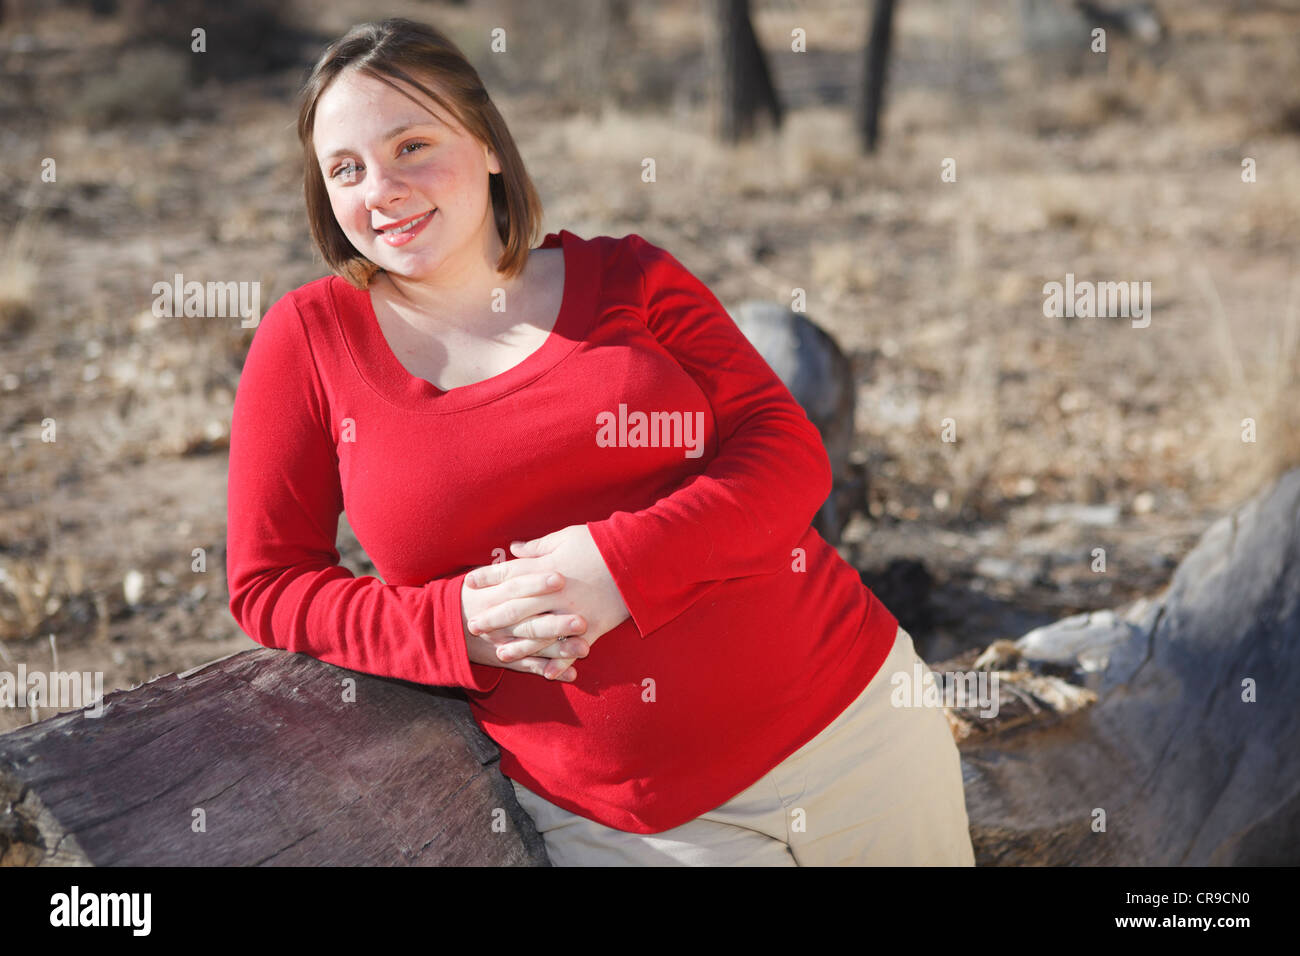 Junge 8 Monate schwangere junge Frau stand neben einem Protokoll im freien trägt ein rotes Hemd. Stockfoto